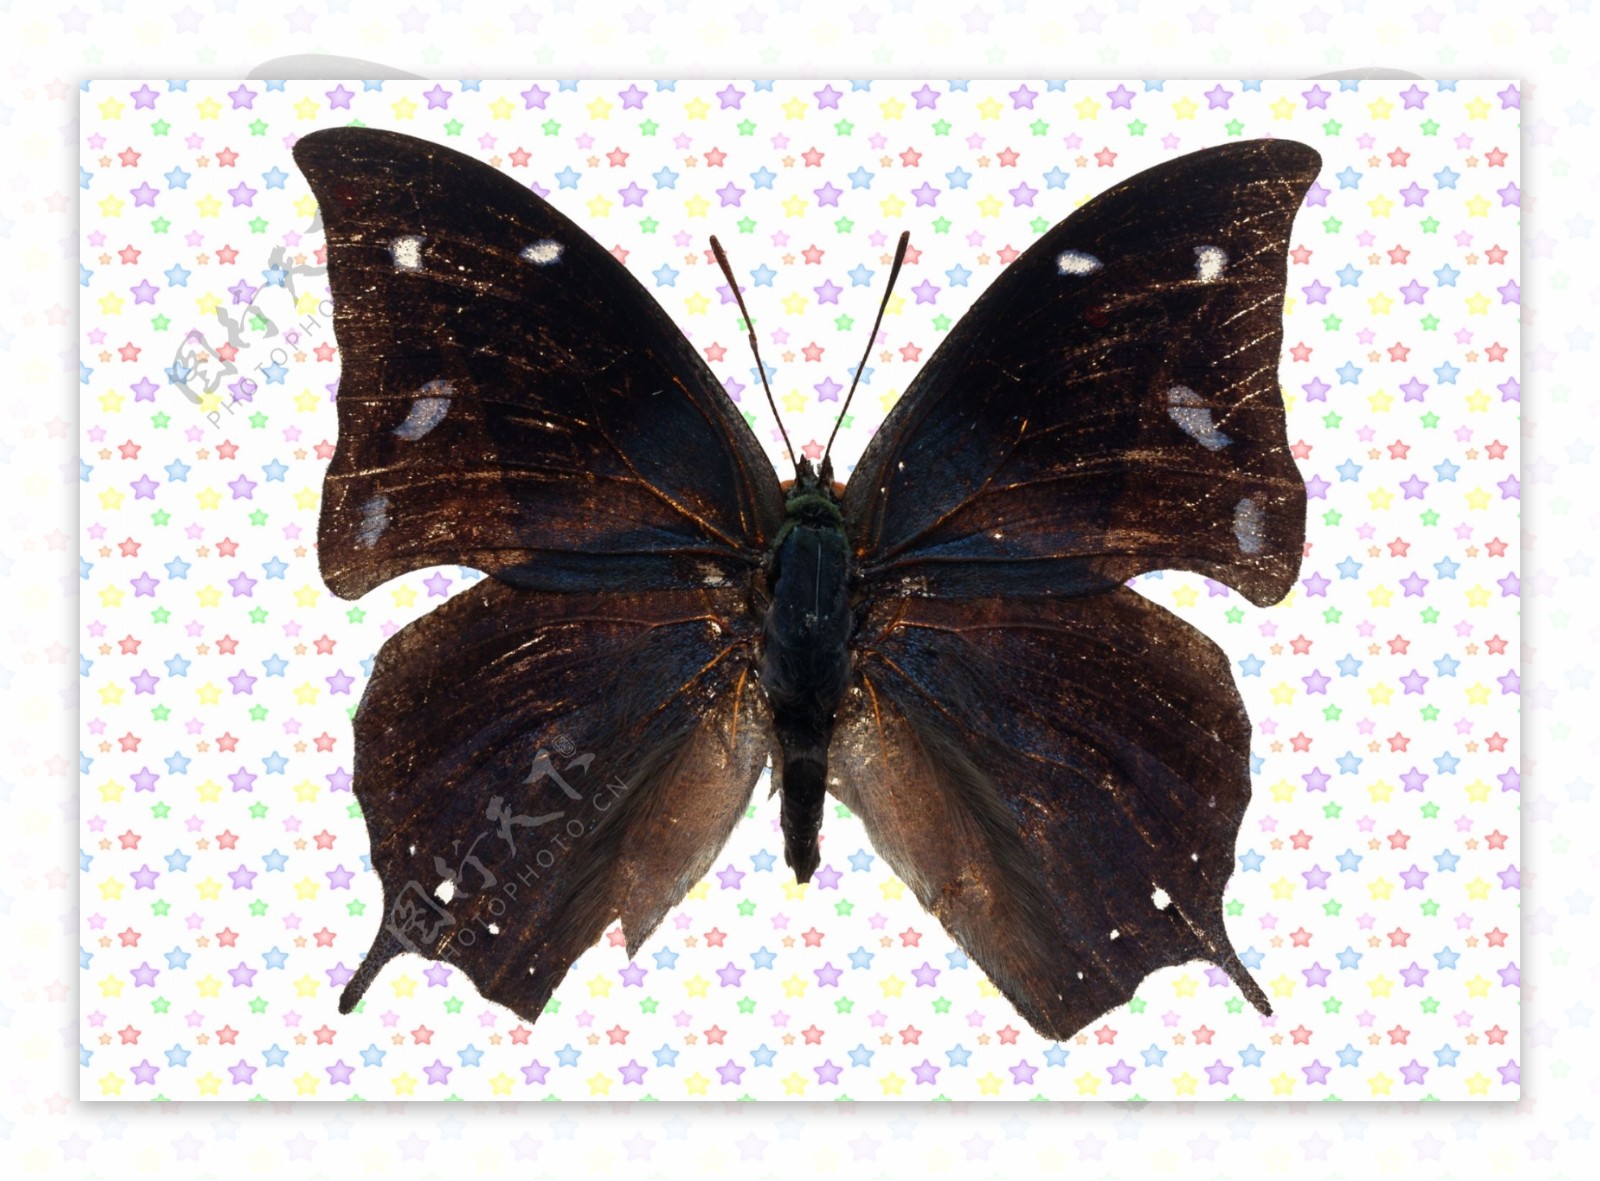 黑色白斑点凤蝶图片